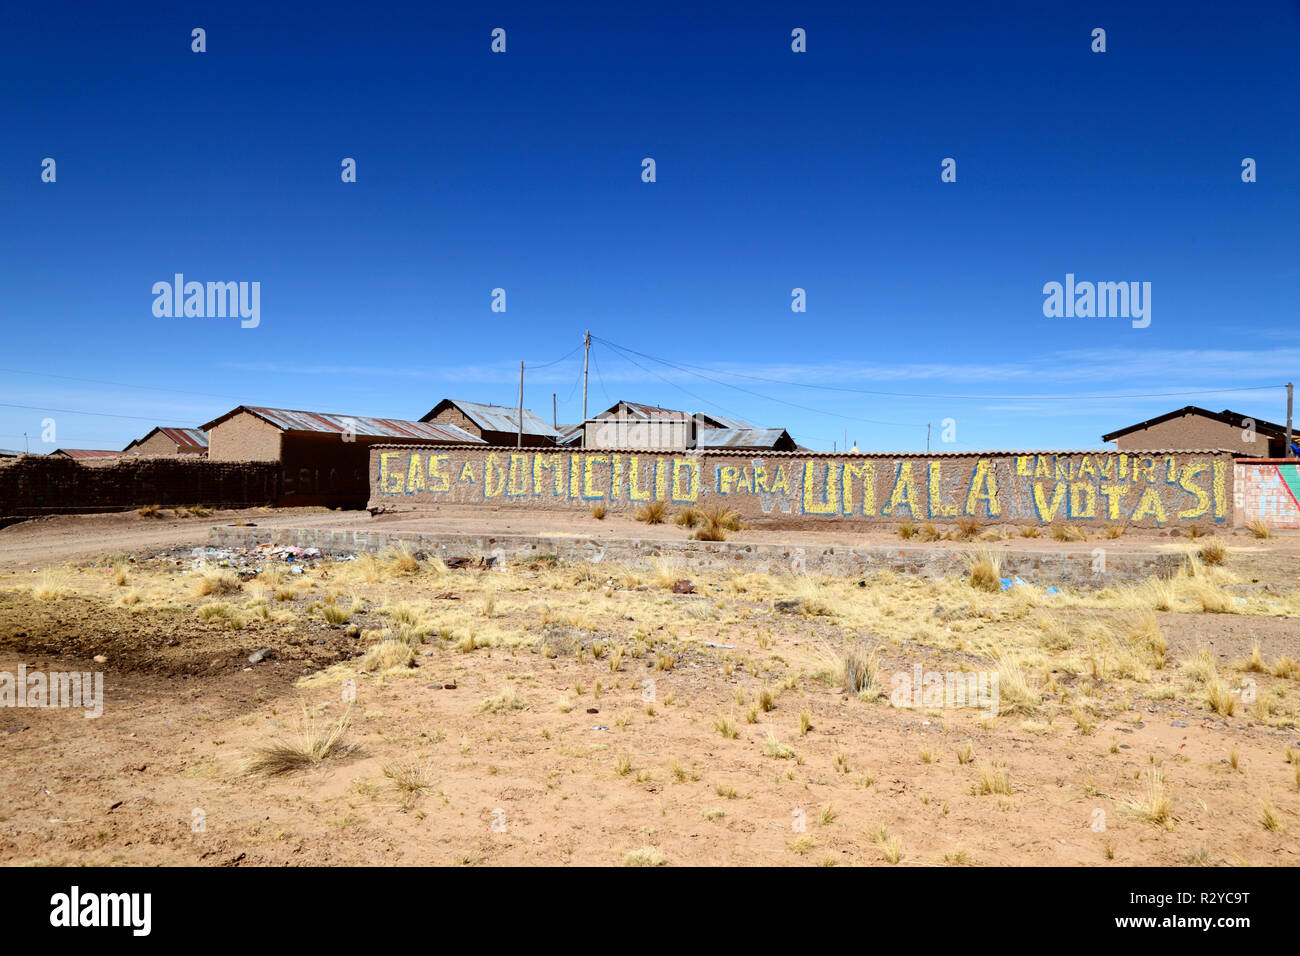 Political propaganda promoting domestic gas supplies / gas a domicilio, Umala, La Paz Department, Bolivia Stock Photo